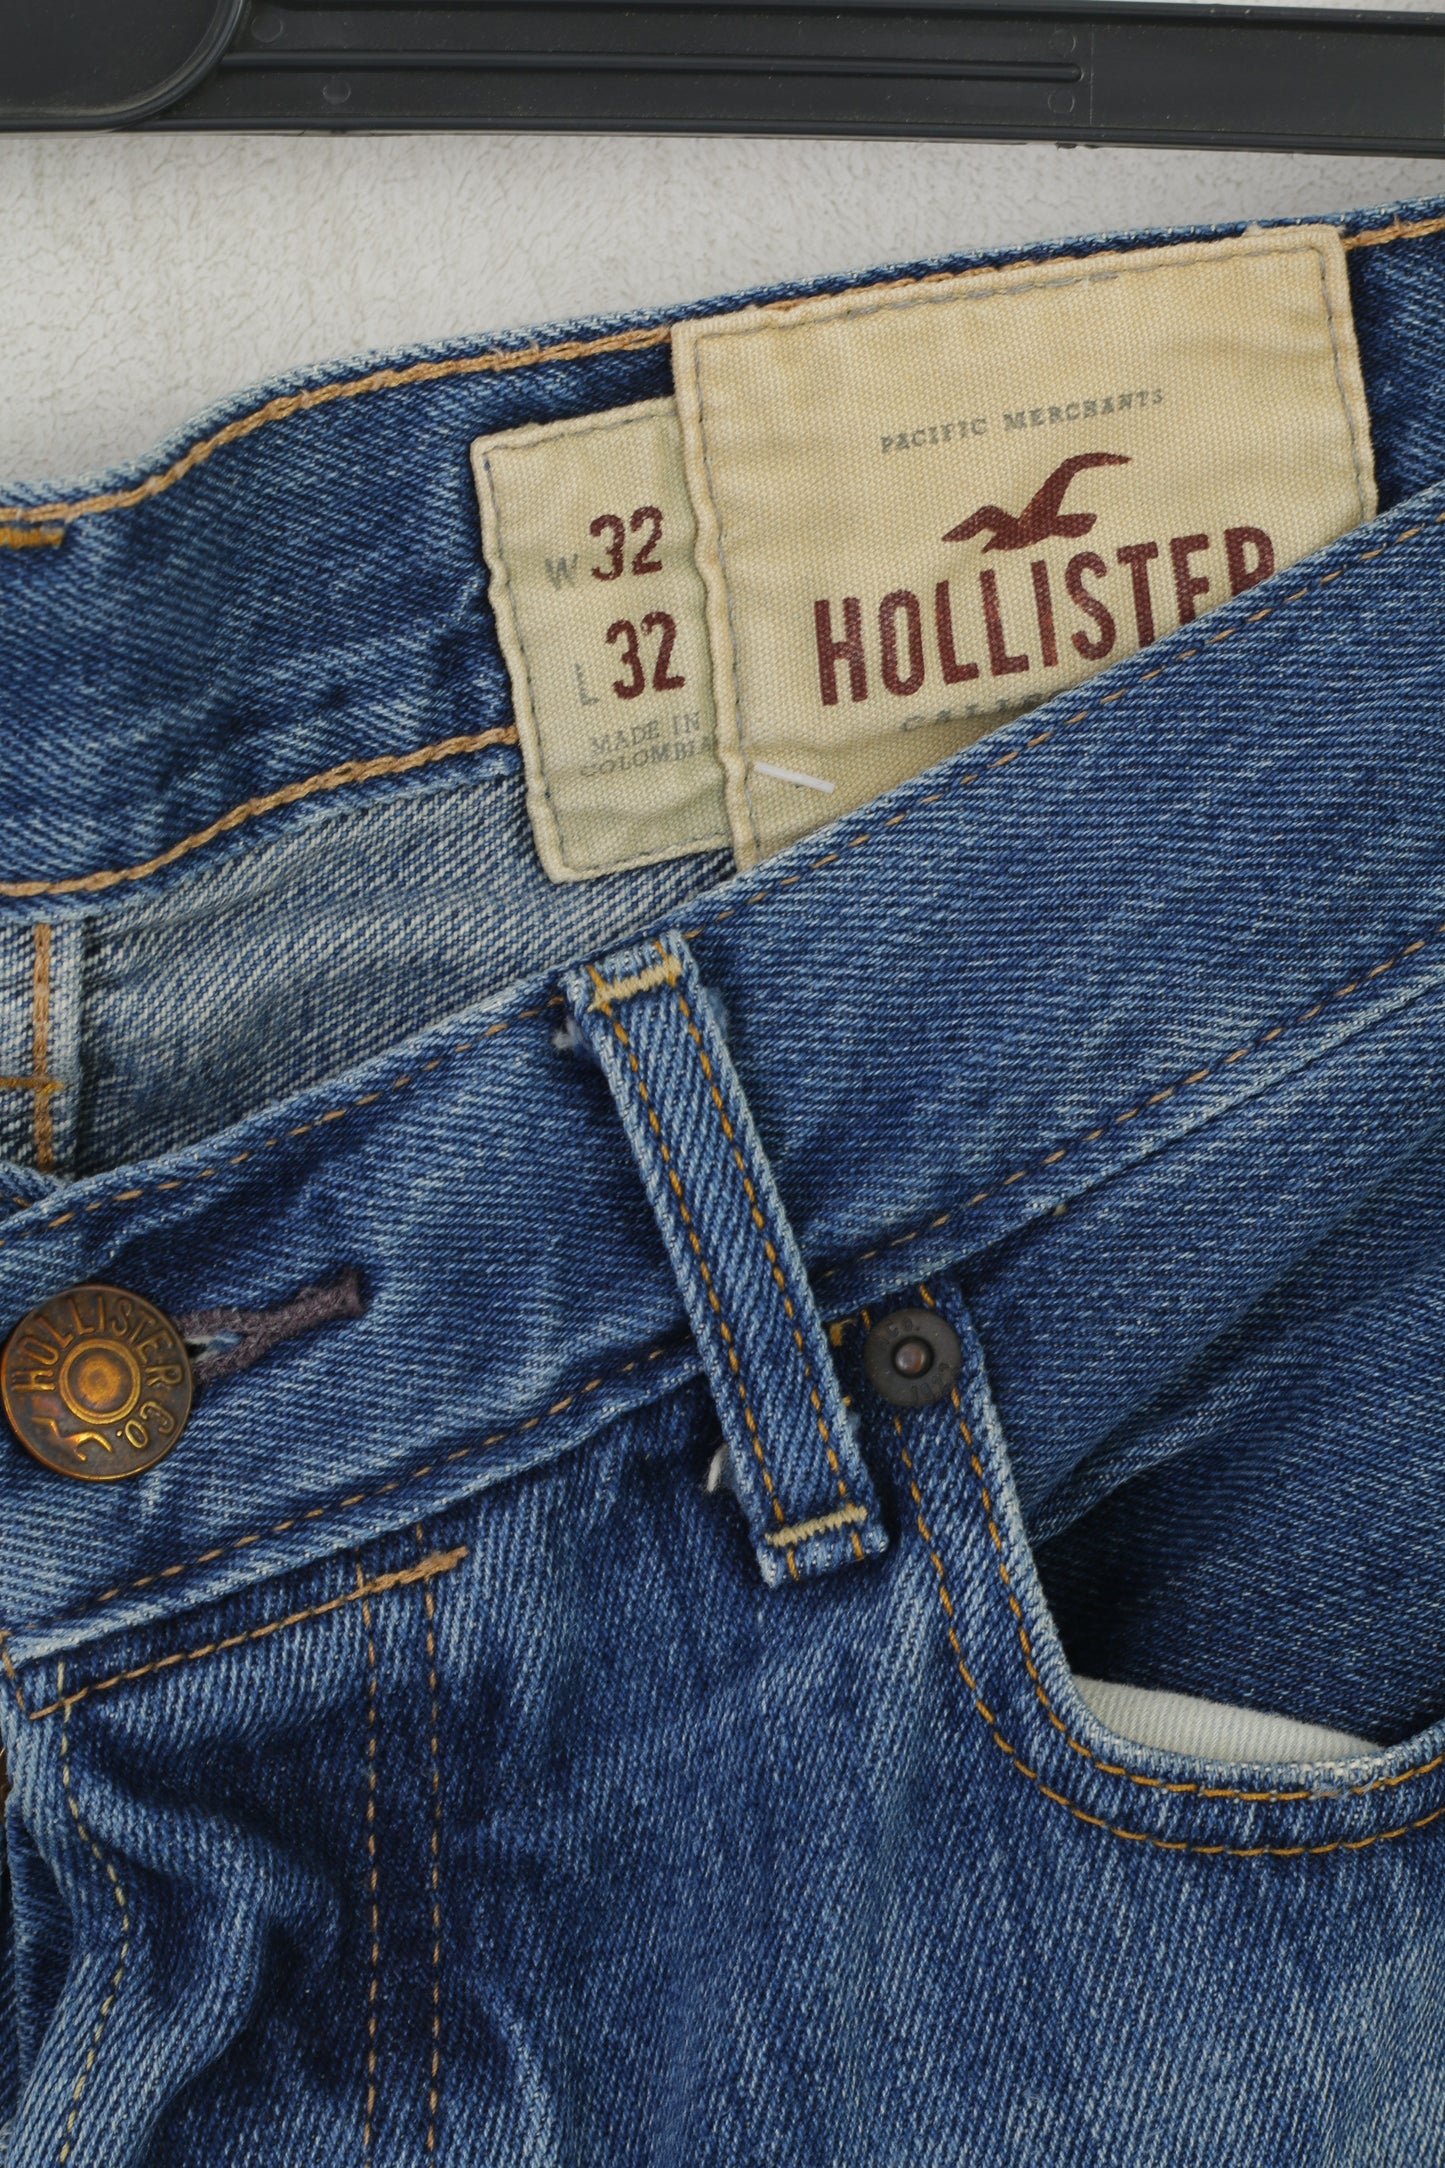 Hollister California Men 32 Jeans Trousers Navy Blue Cotton Classic Denim Pants